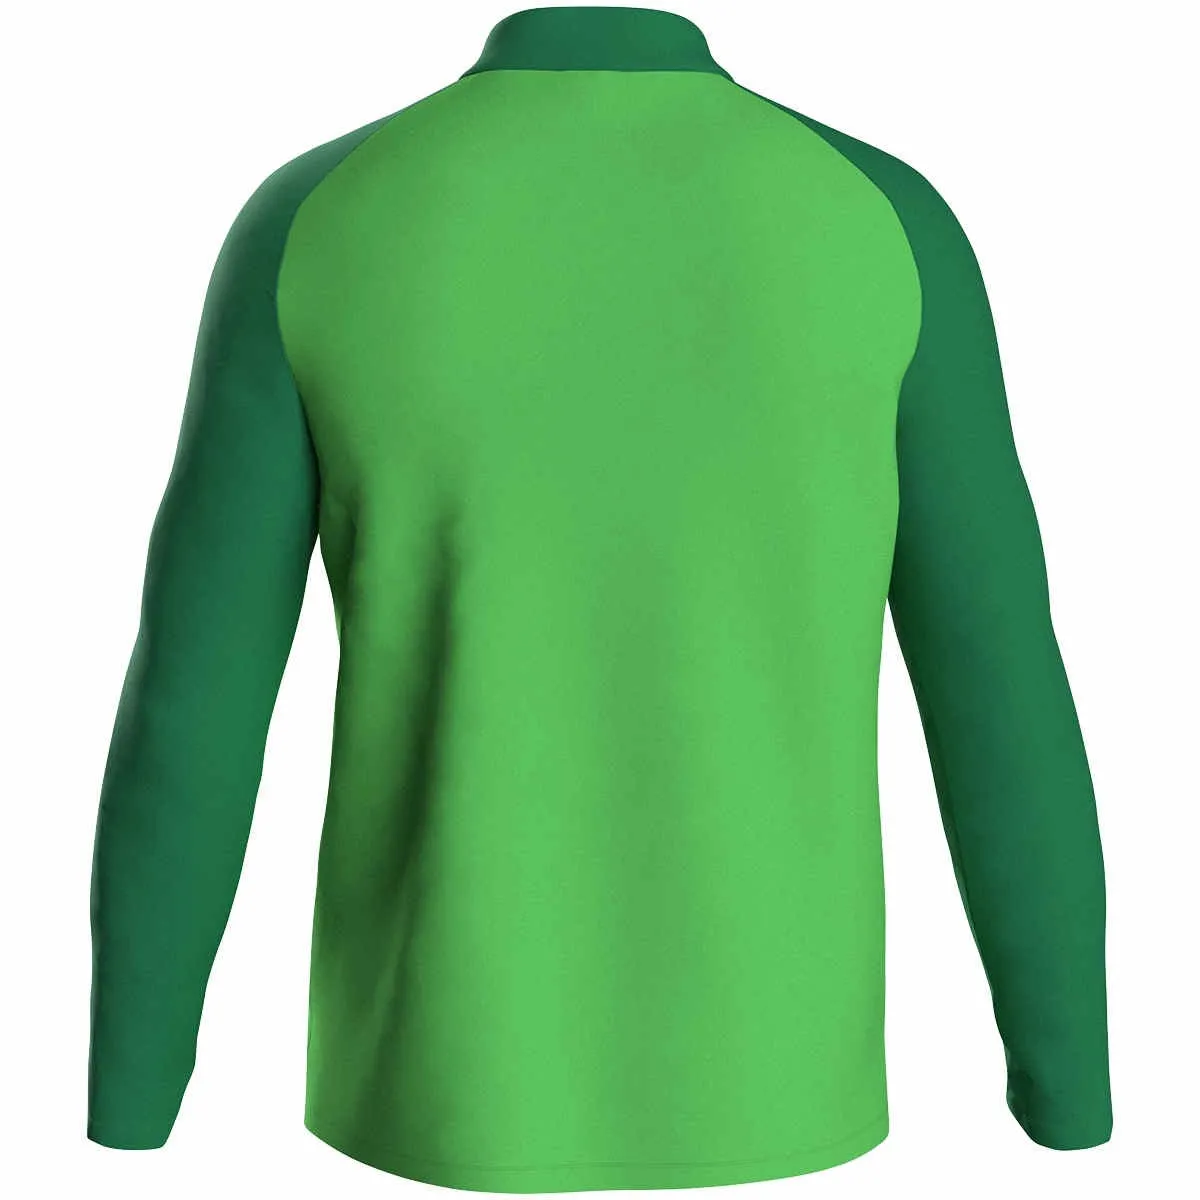 Veste en polyester JAKO Iconic vert tendre/vert sport